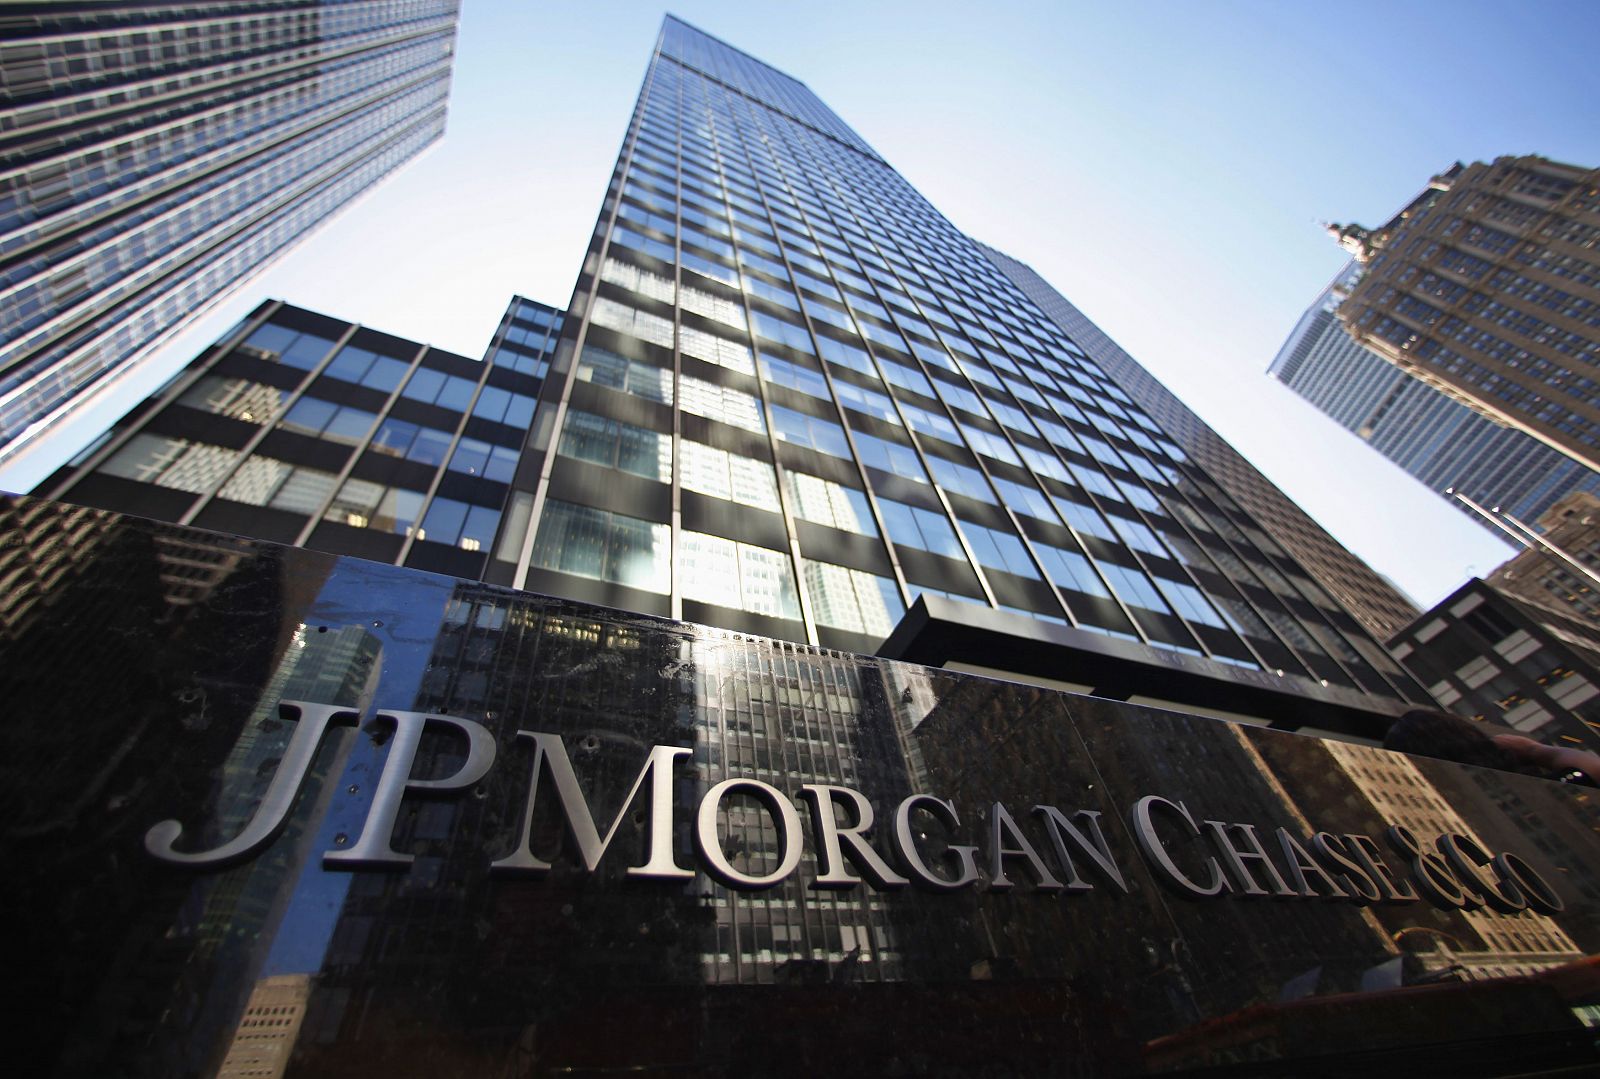 Imagen externa de las oficinas centrales de JP Morgan Chase & Co in New York, tomada en septiembre de 2013